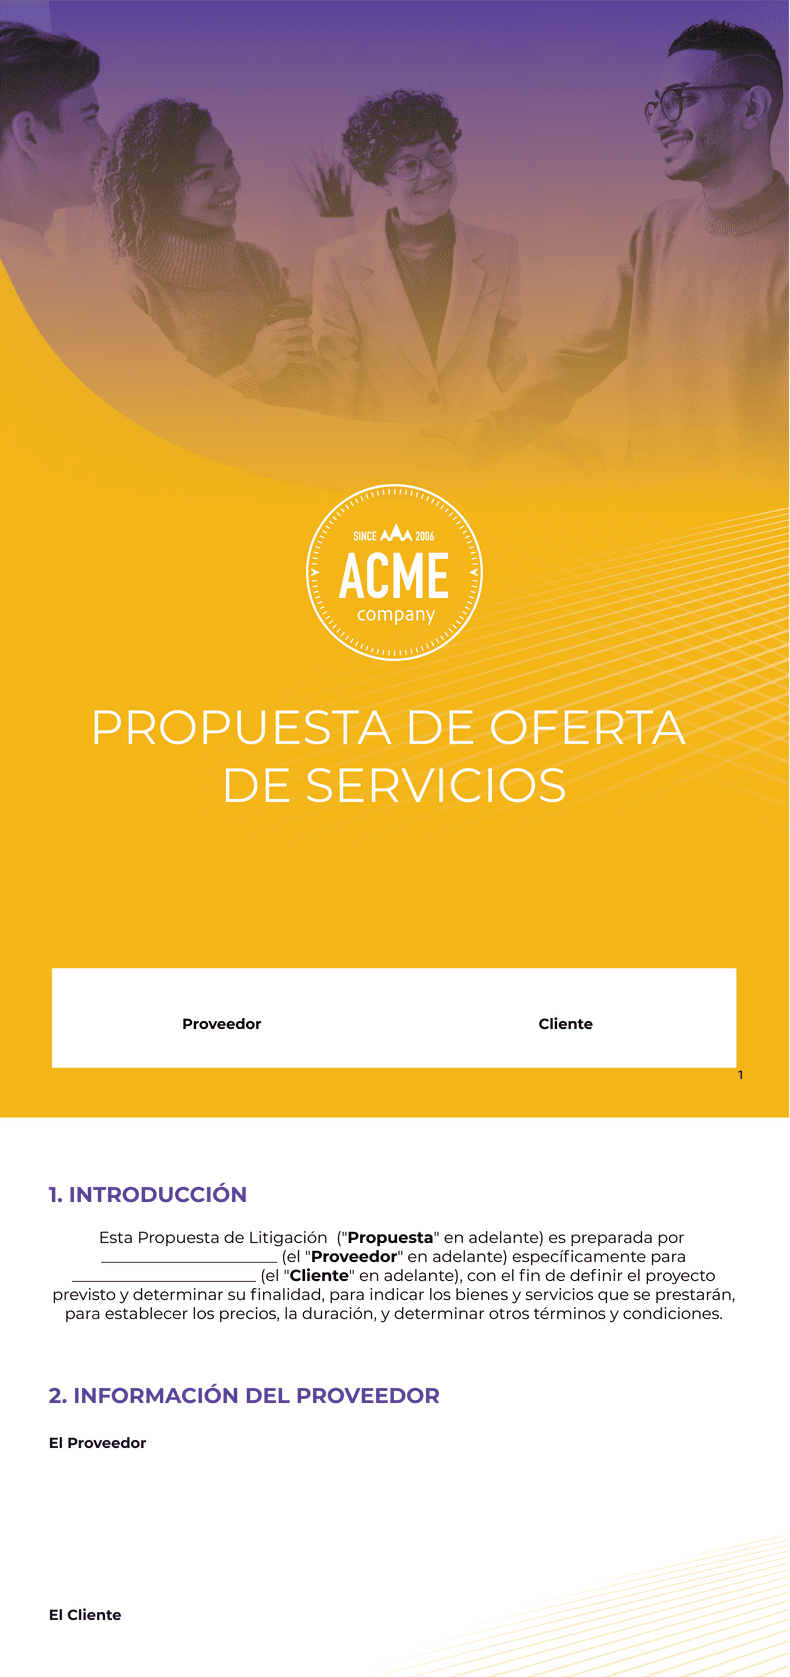 PDF Templates: Propuesta de Oferta de Servicios